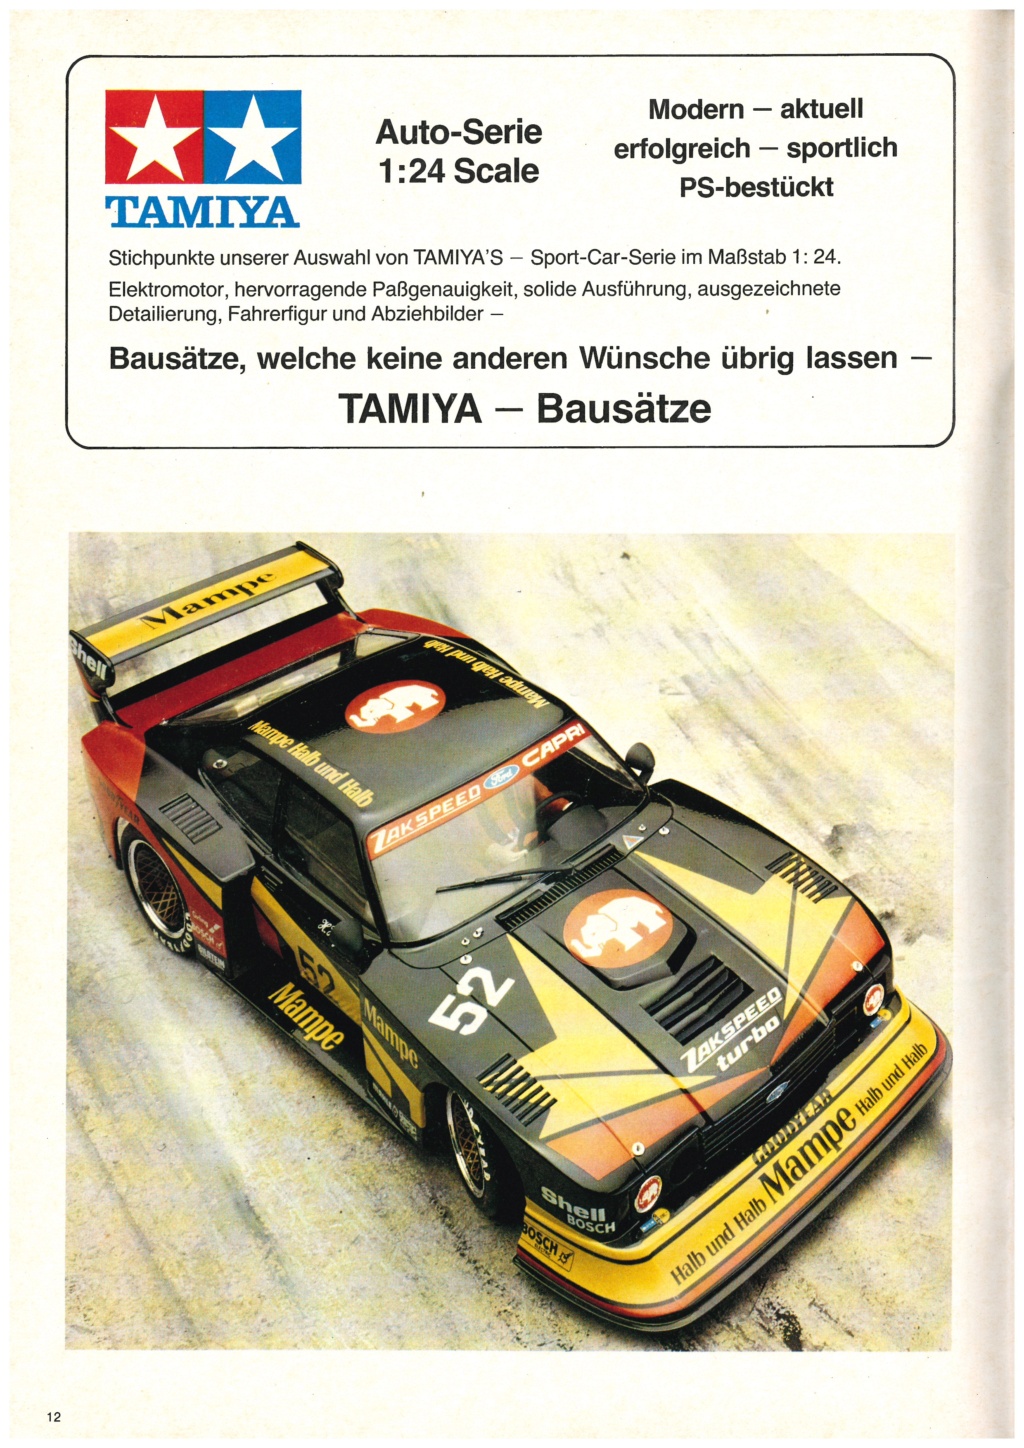 [TAMIYA HEINZ BEHRINGER 1982] Catalogue allemand importateur HEINZ BEHRINGER 1982 Tami3271